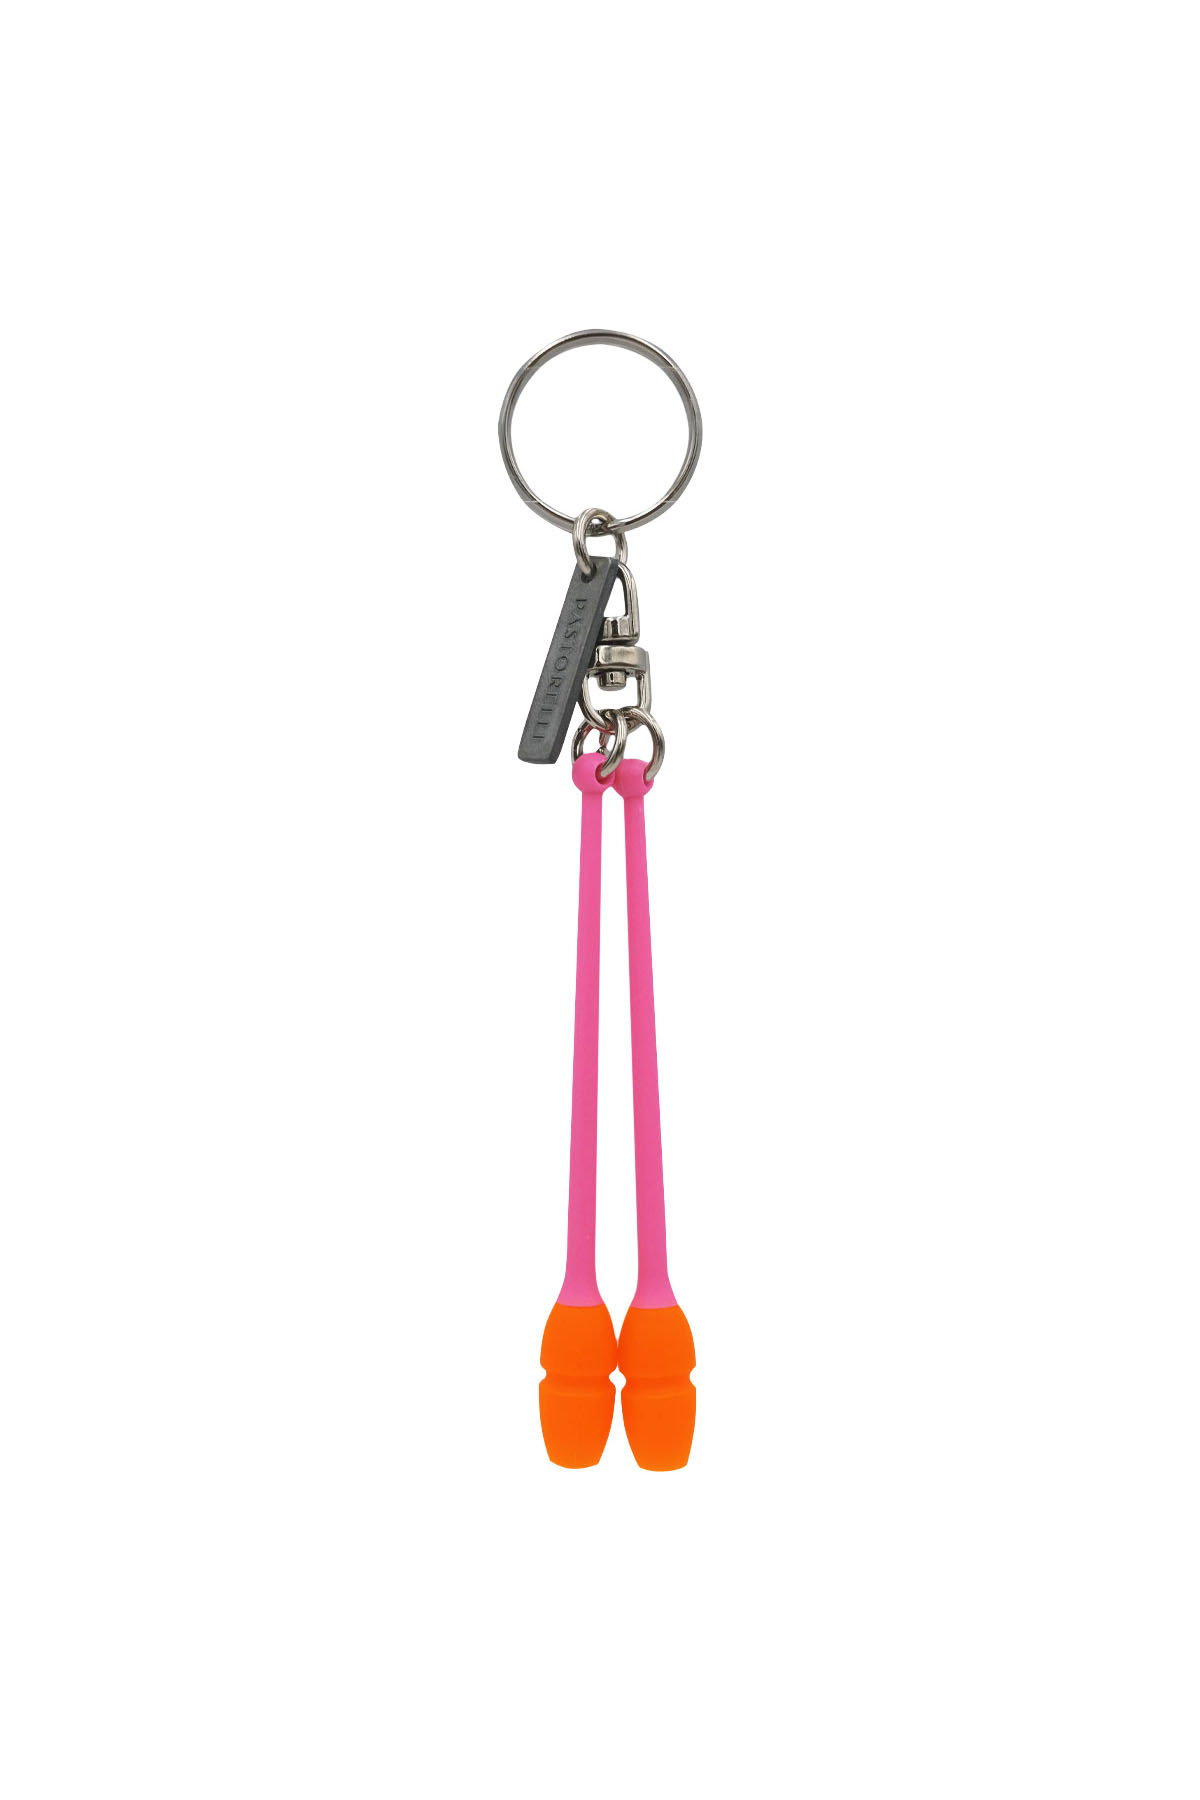 Kľúčenka Mashina kužele PASTORELLI fluo pink-orange 00349